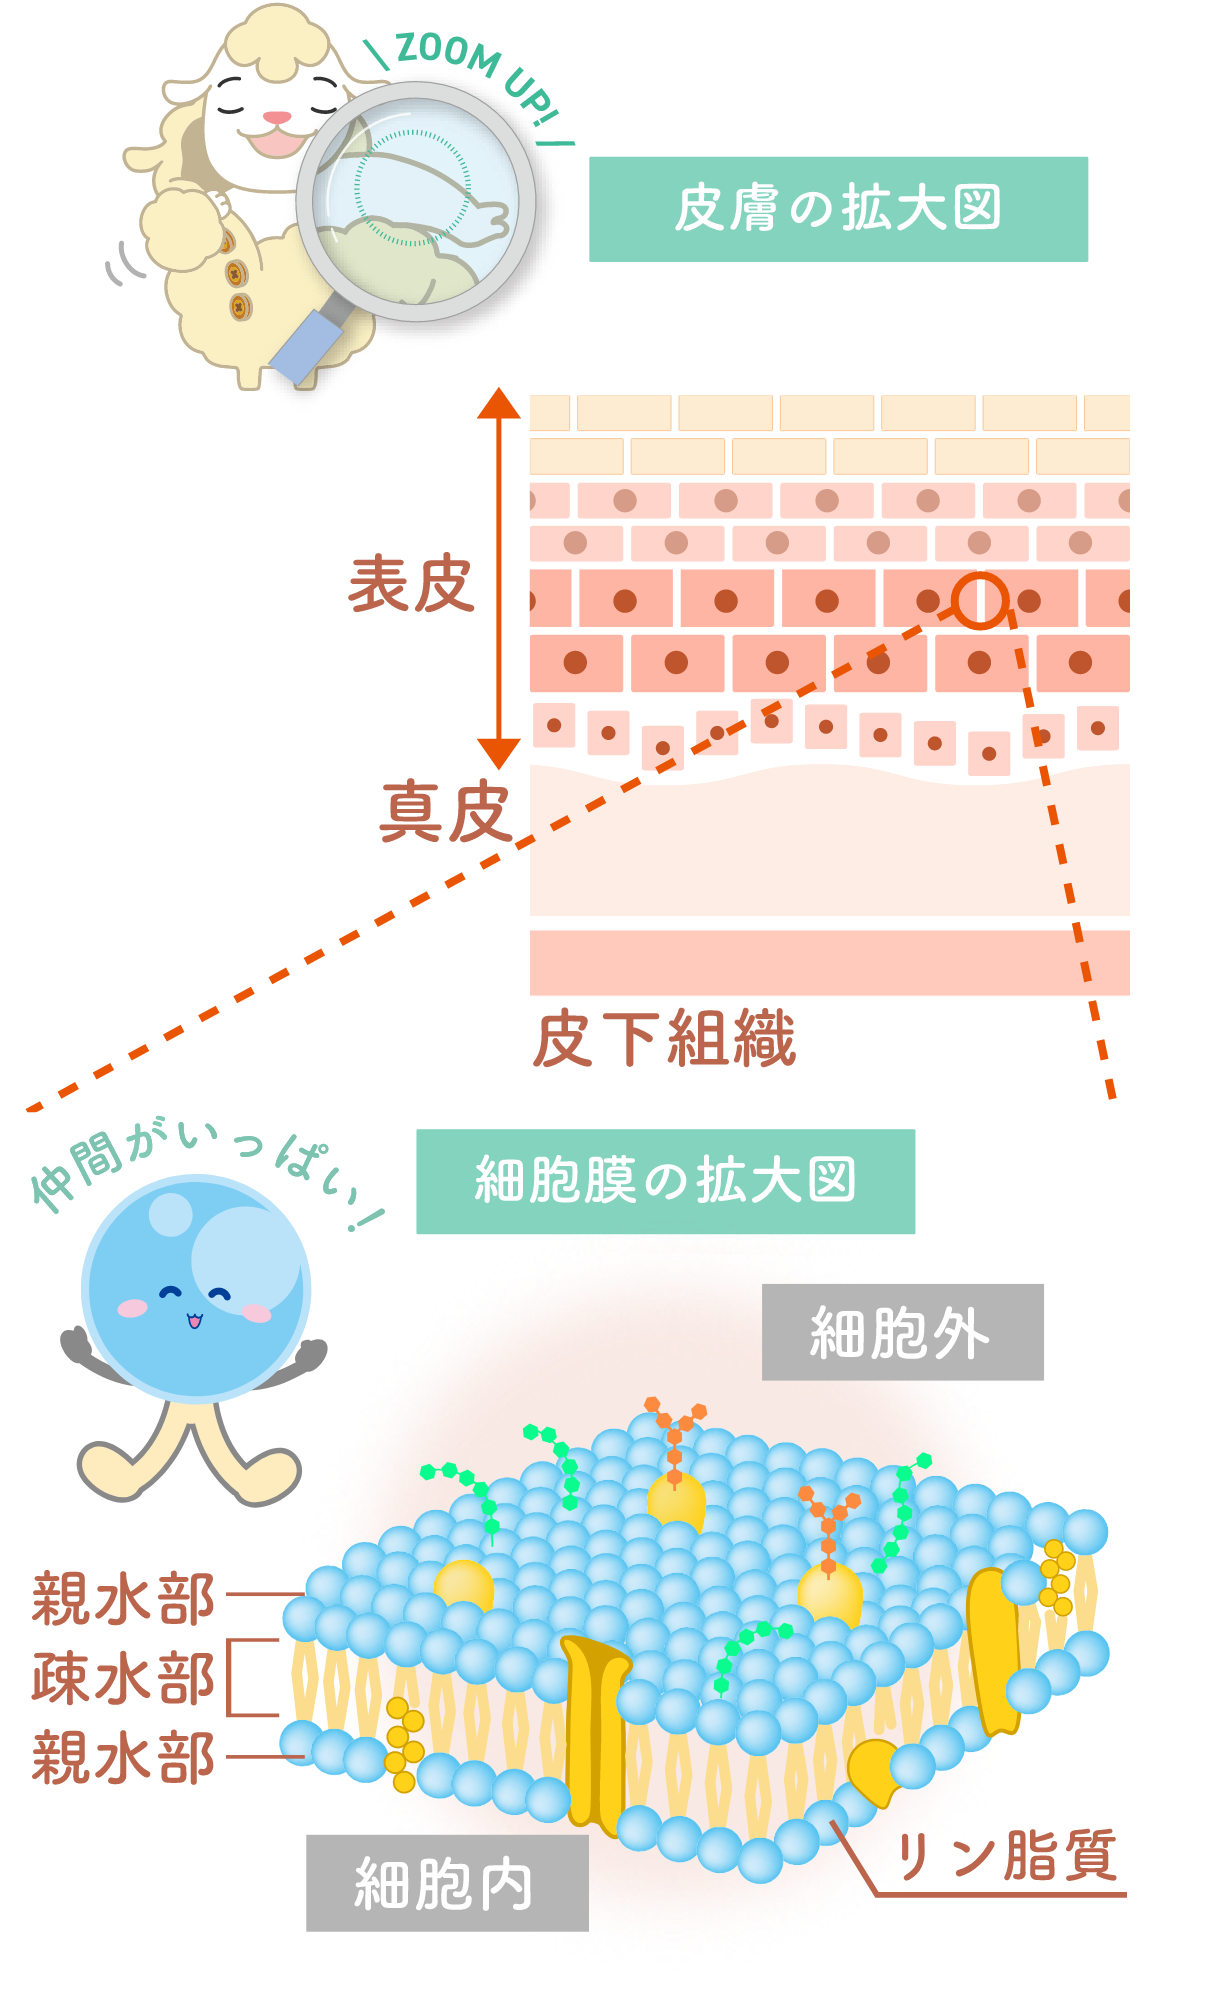 皮膚の拡大図と細胞膜の拡大図